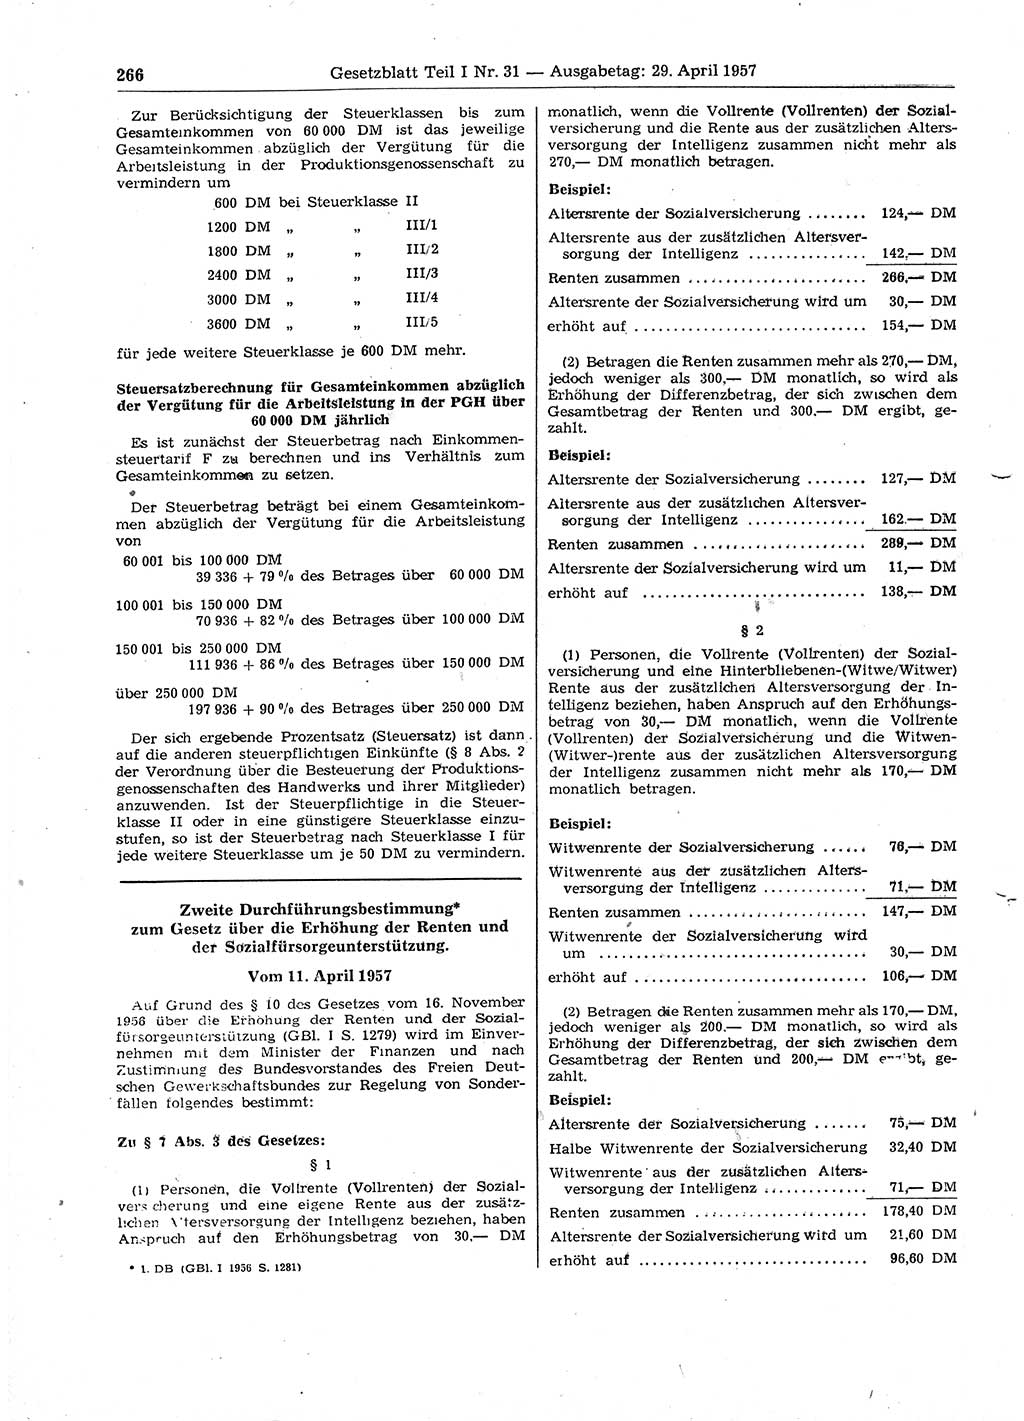 Gesetzblatt (GBl.) der Deutschen Demokratischen Republik (DDR) Teil Ⅰ 1957, Seite 266 (GBl. DDR Ⅰ 1957, S. 266)